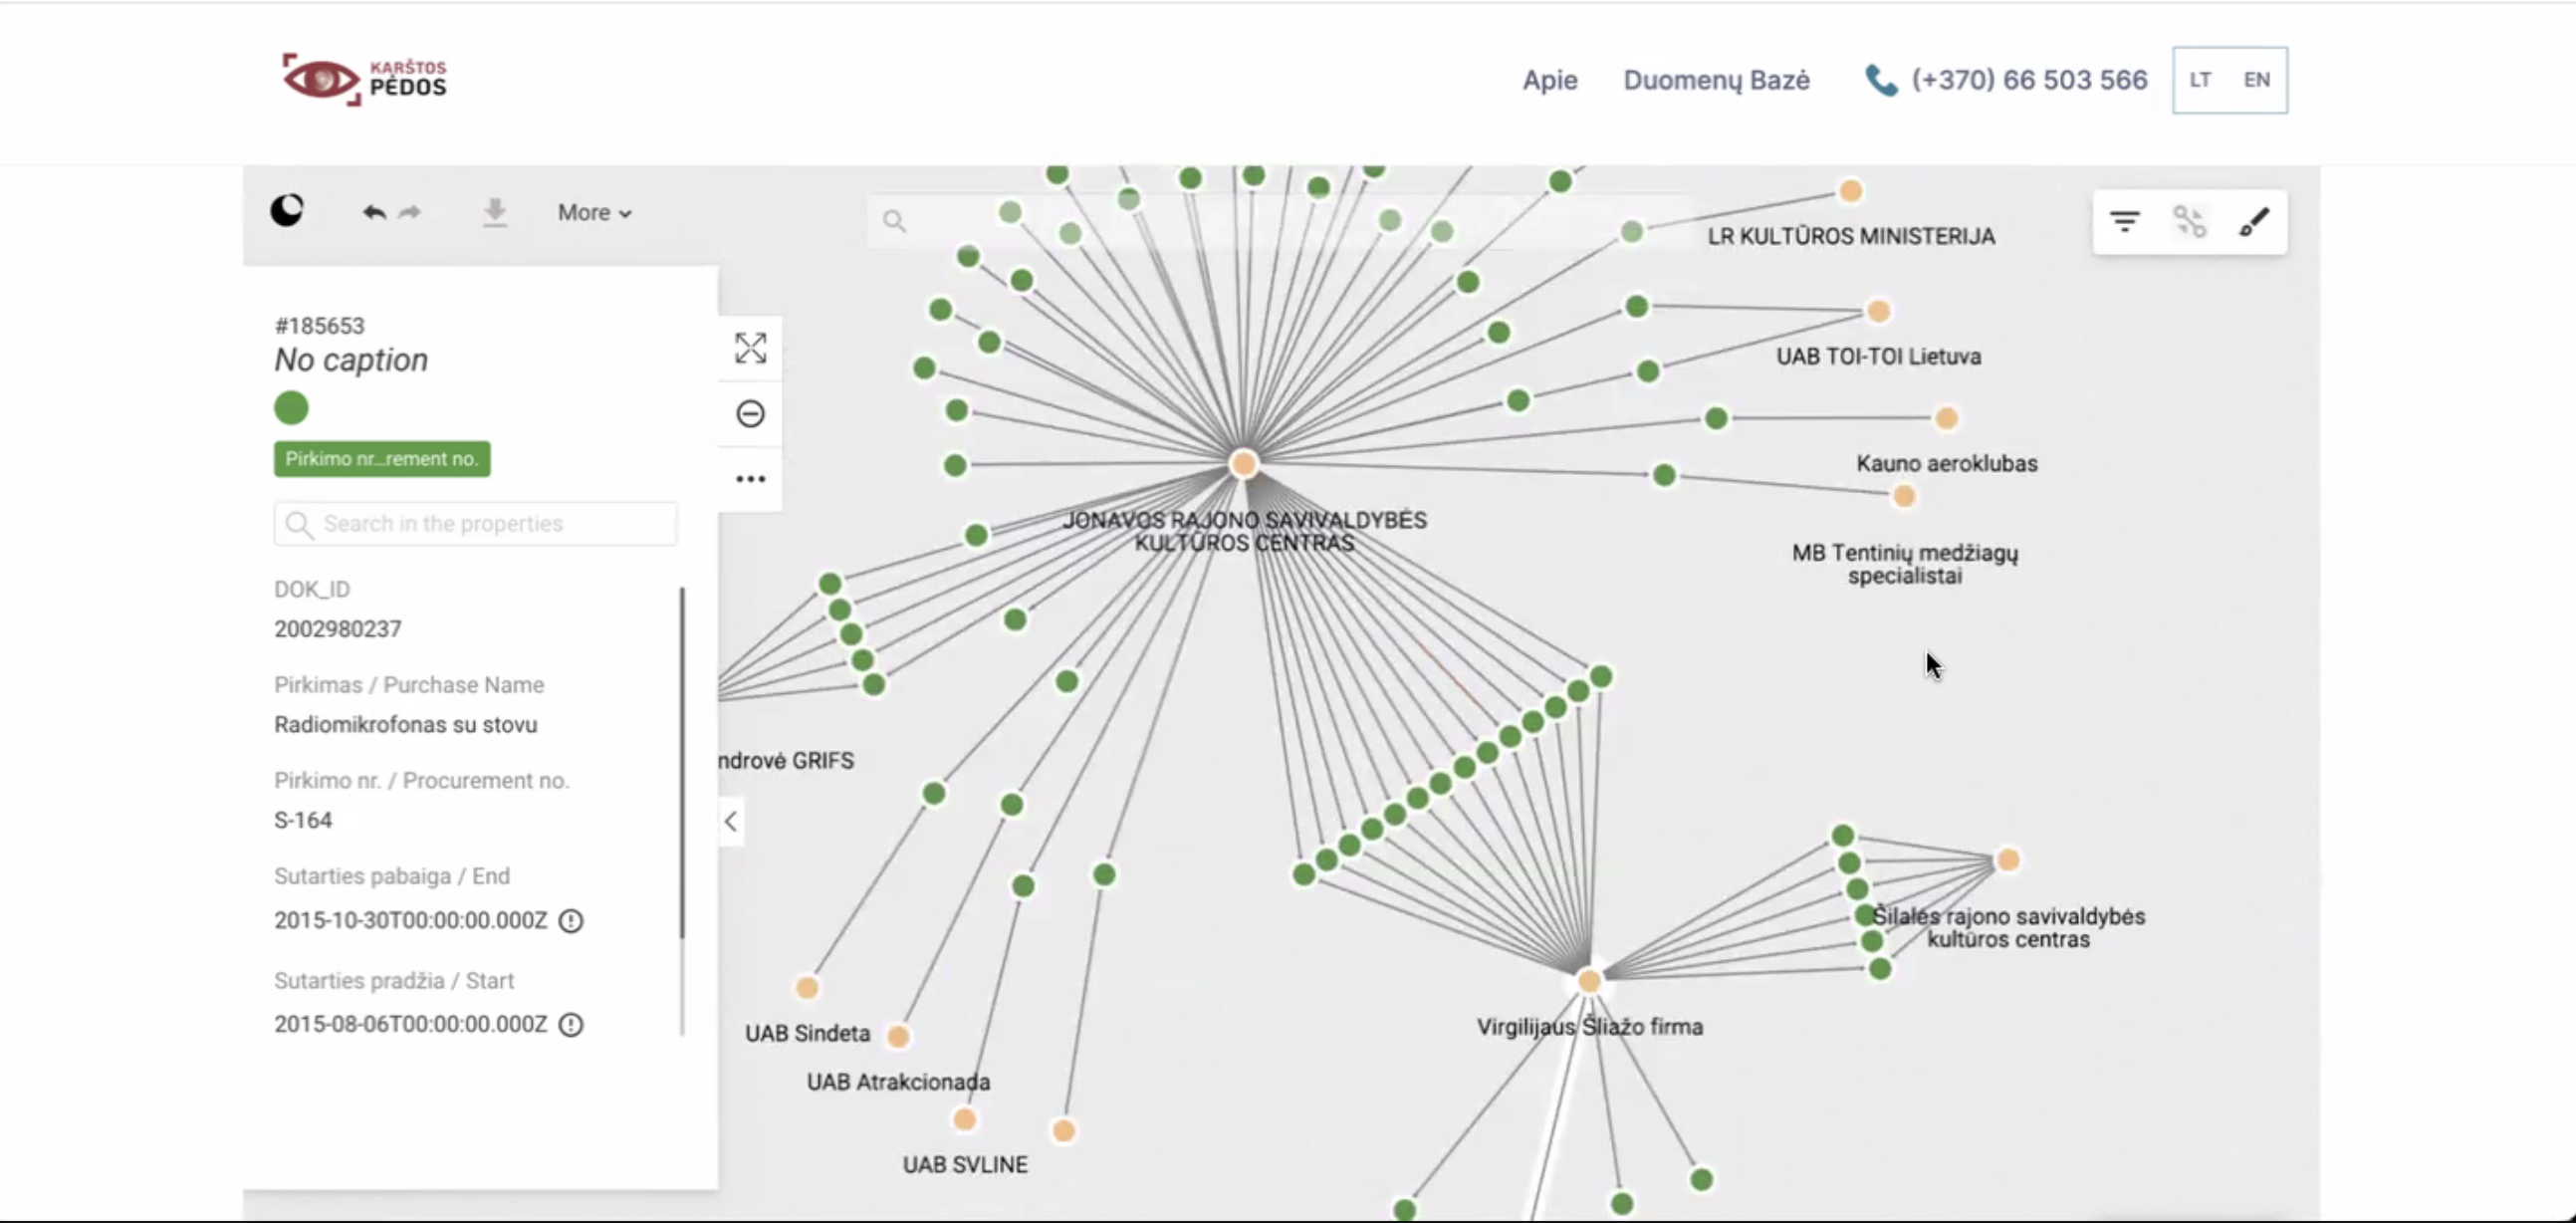 A screenshot of Karstos pedos graph investigation platform